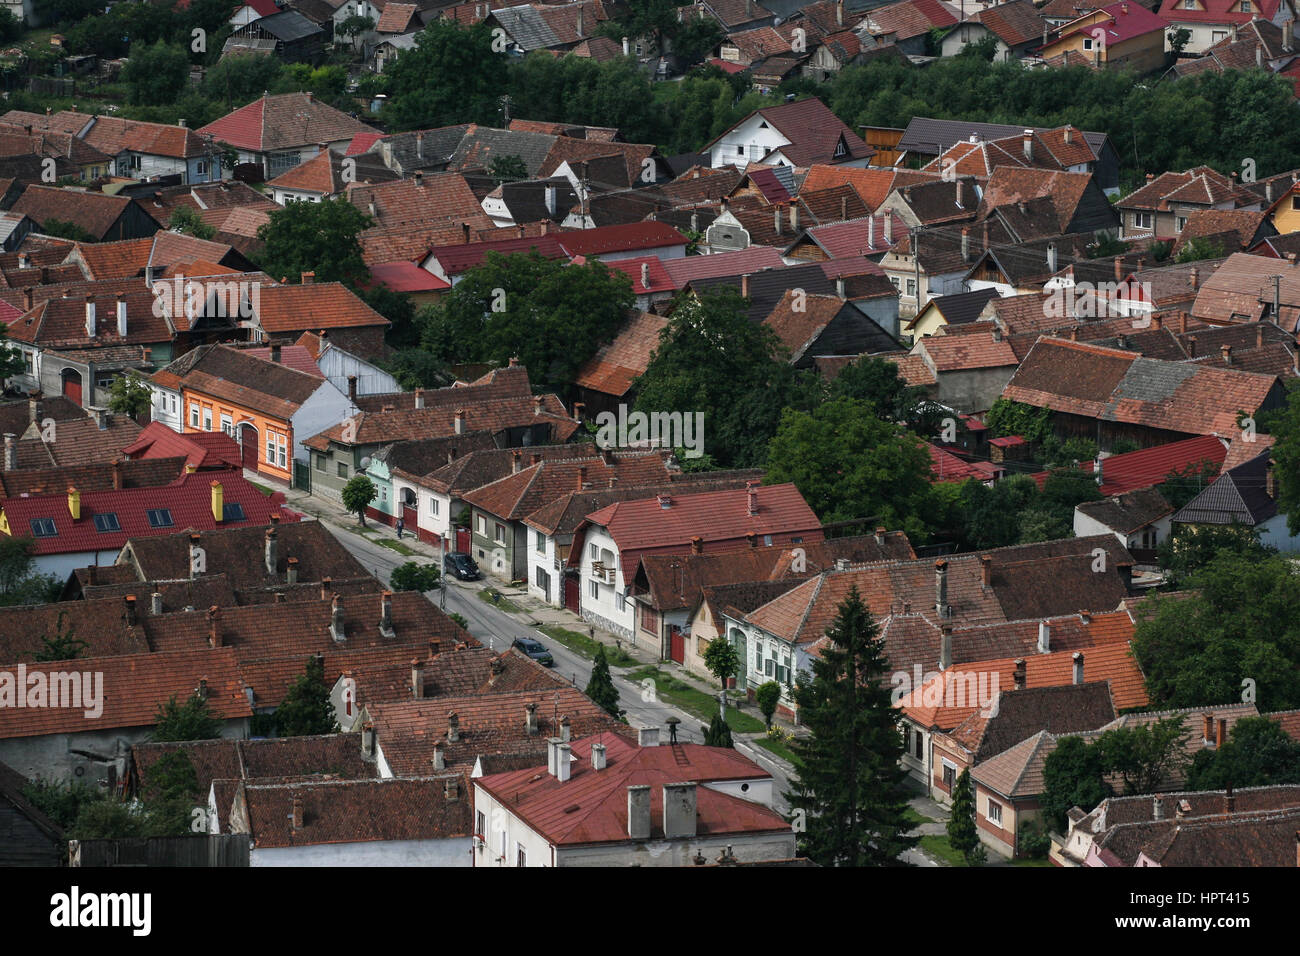 Rasnov, Romania, July 4, 2009: View of Rasnov city from the Rasnov citadel, Romania. Stock Photo